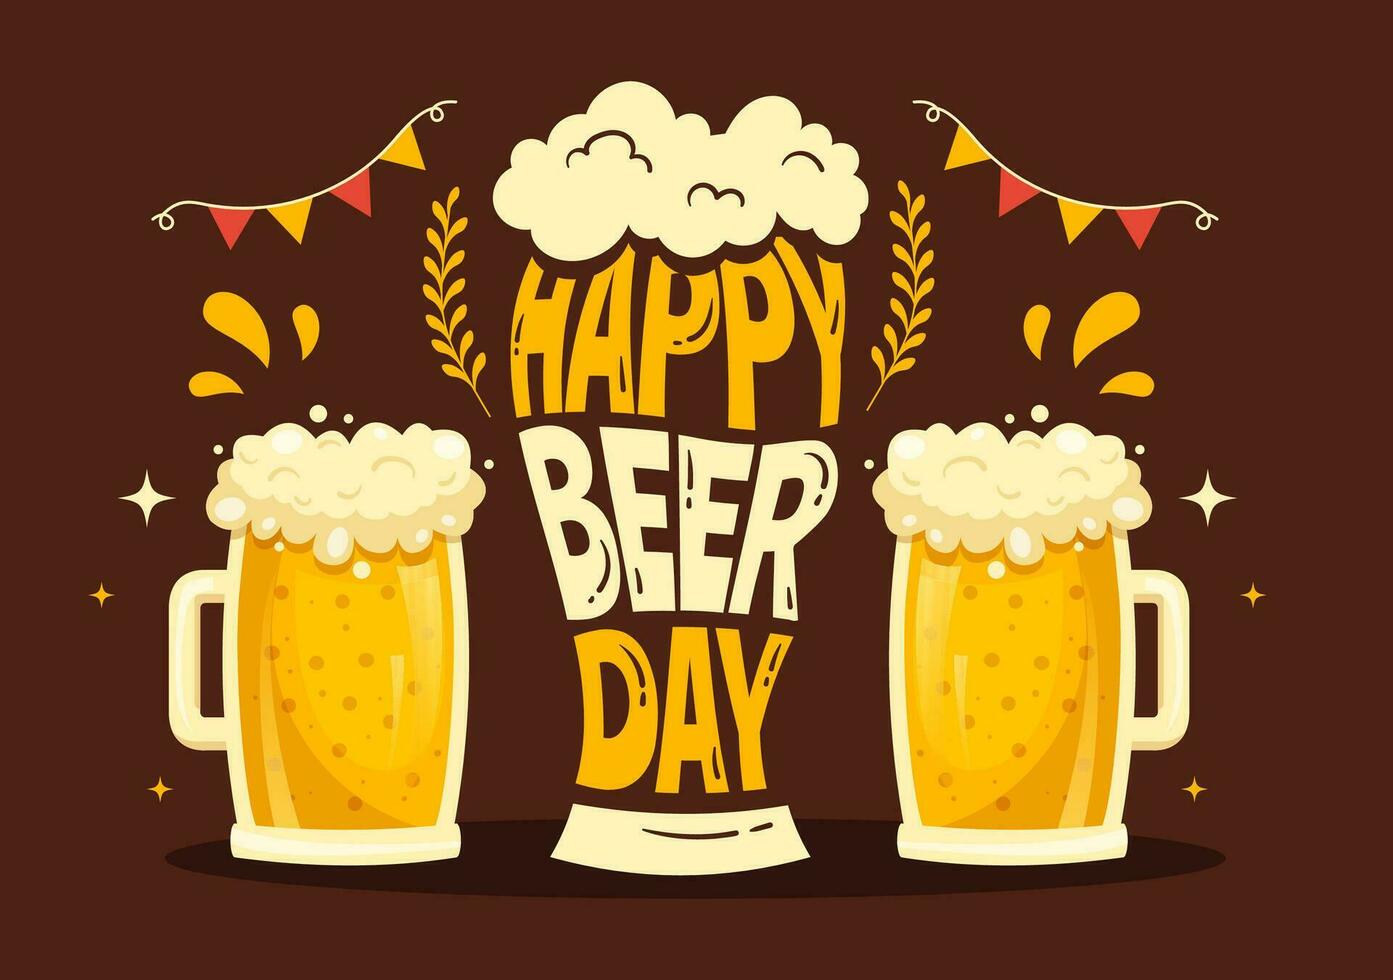 internazionale birra giorno vettore illustrazione con Saluti birre celebrazione nel piatto cartone animato mano disegnato atterraggio pagina sfondo modelli